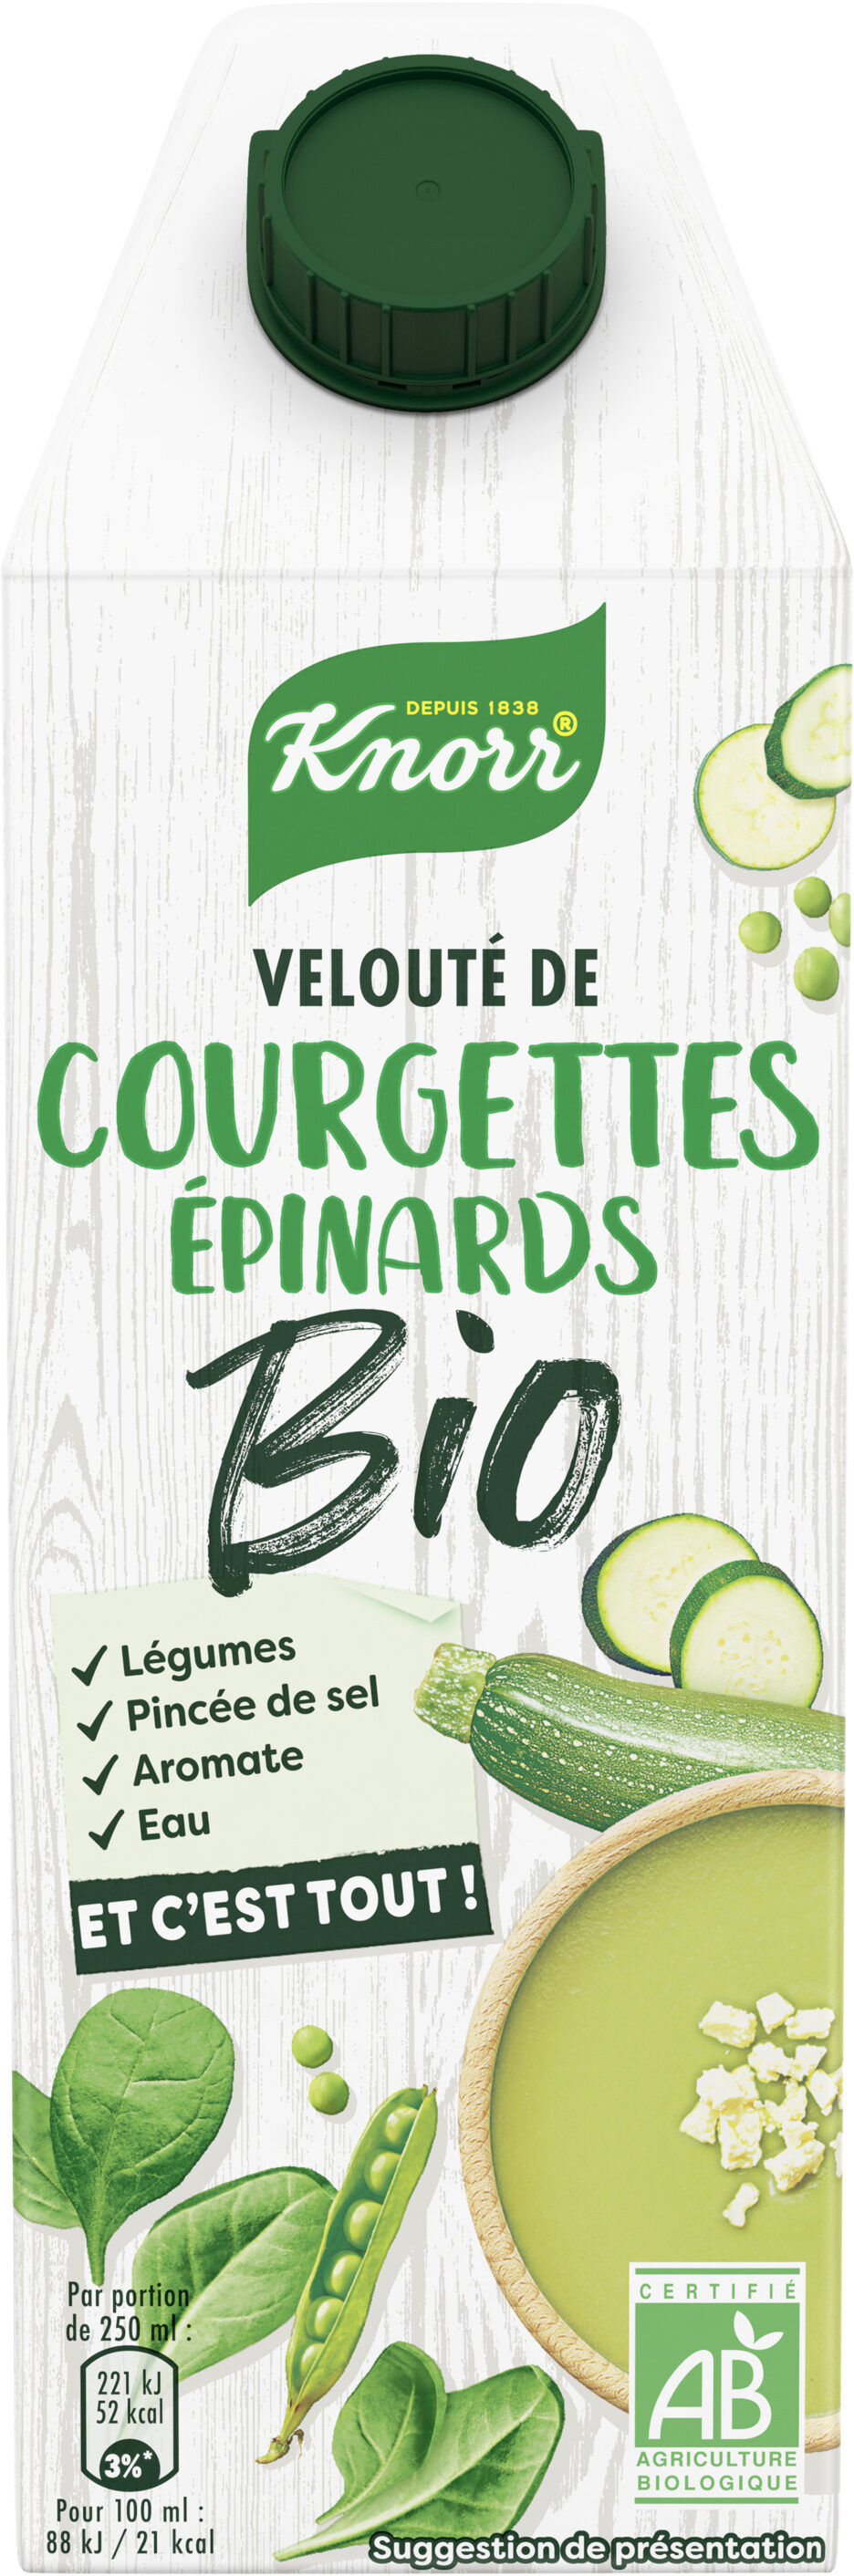 Knorr Et c'est tout Soupe Bio Liquide Velouté Courgettes Epinards Bouteille de 750ml - Produit